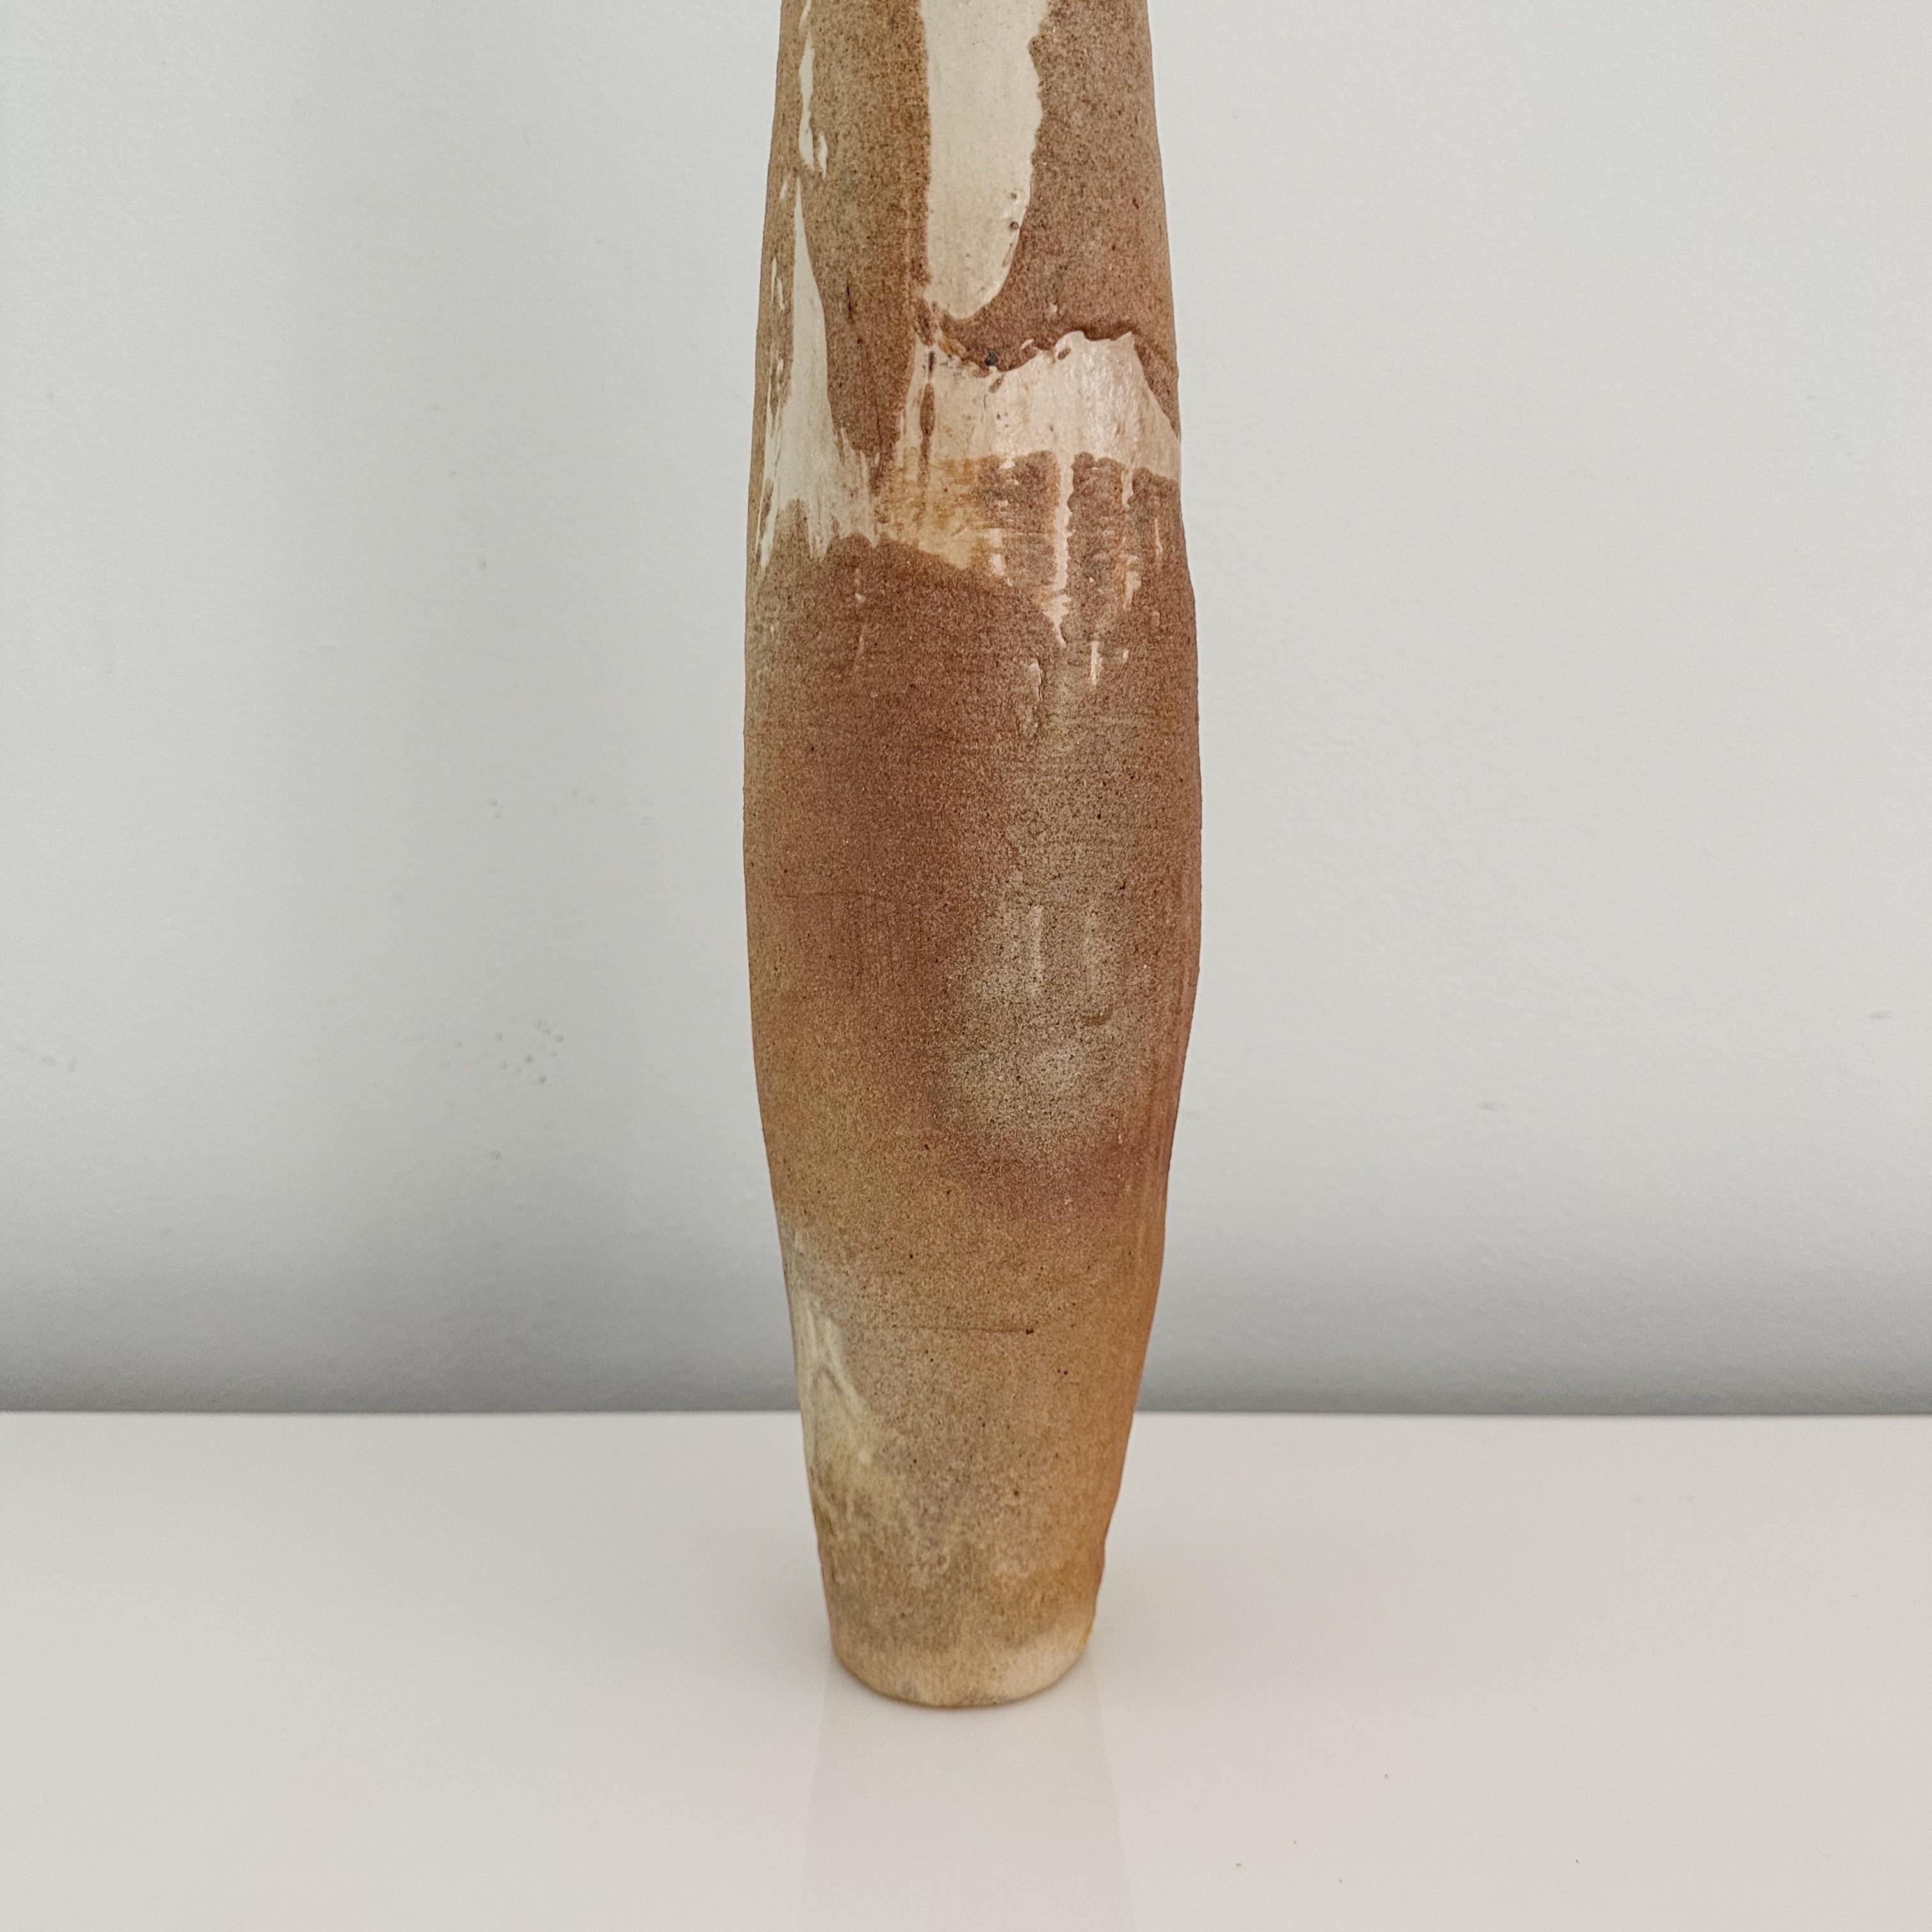 Vase cylindrique unique de Studio Pottery, grand et léger, fabriqué en 1984, avec une signature illisible dans les tons tans et blancs.

Haut et léger, ce vase présente un jeu captivant de tans et de blancs, avec un glaçage sable.
Fabriqué par un